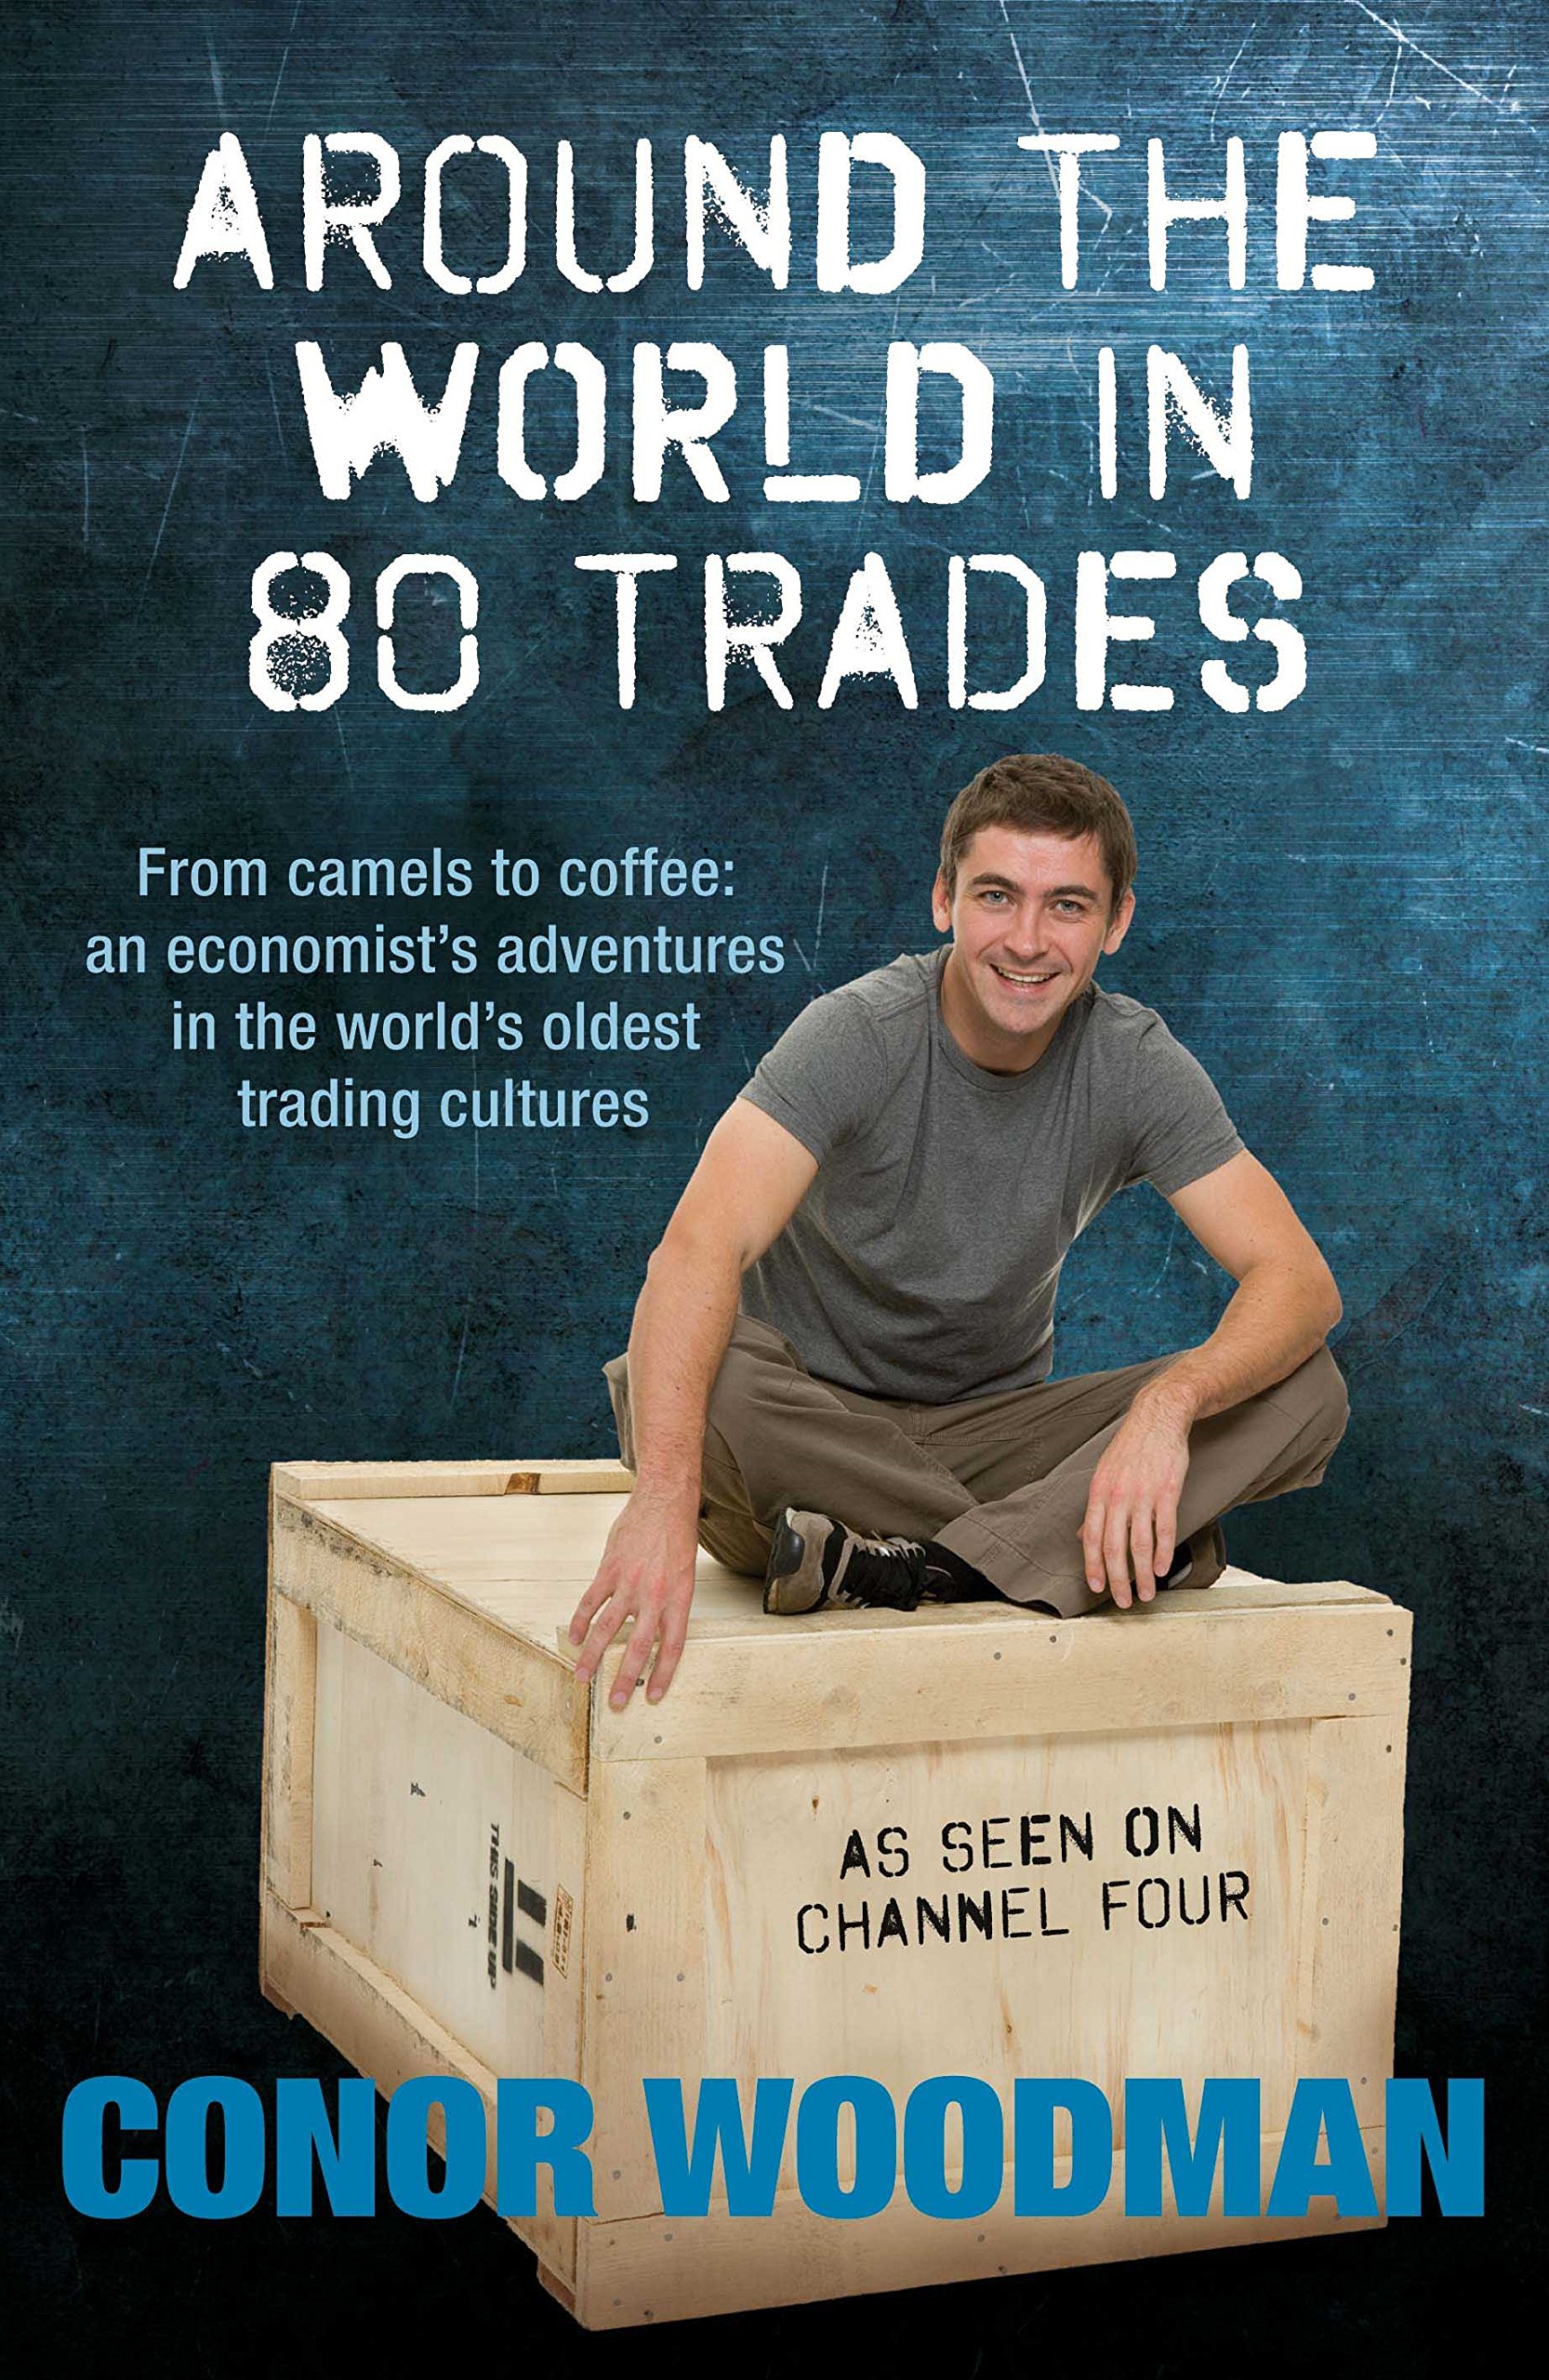 Caratula de Around The World In 80 Trades (Alrededor del mundo en 80 oficios) 